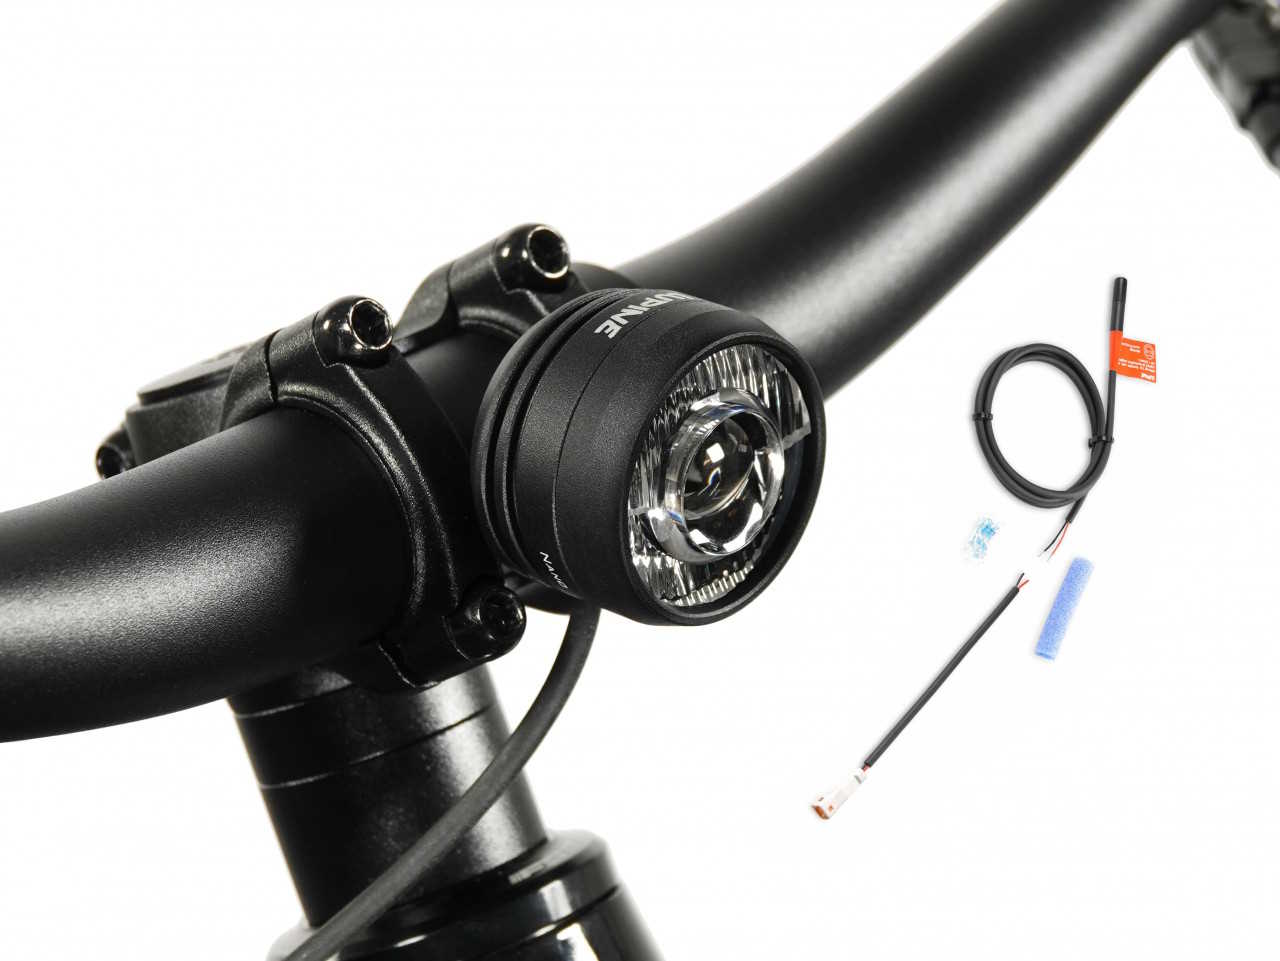 Produktbild von Lupine SL Nano für E-Bikes mit Giant Motor, E-Bike Beleuchtung mit 1000 Lumen Fernlicht, Lenkerhalter 31,8mm + Bluetooth Fernbedienung